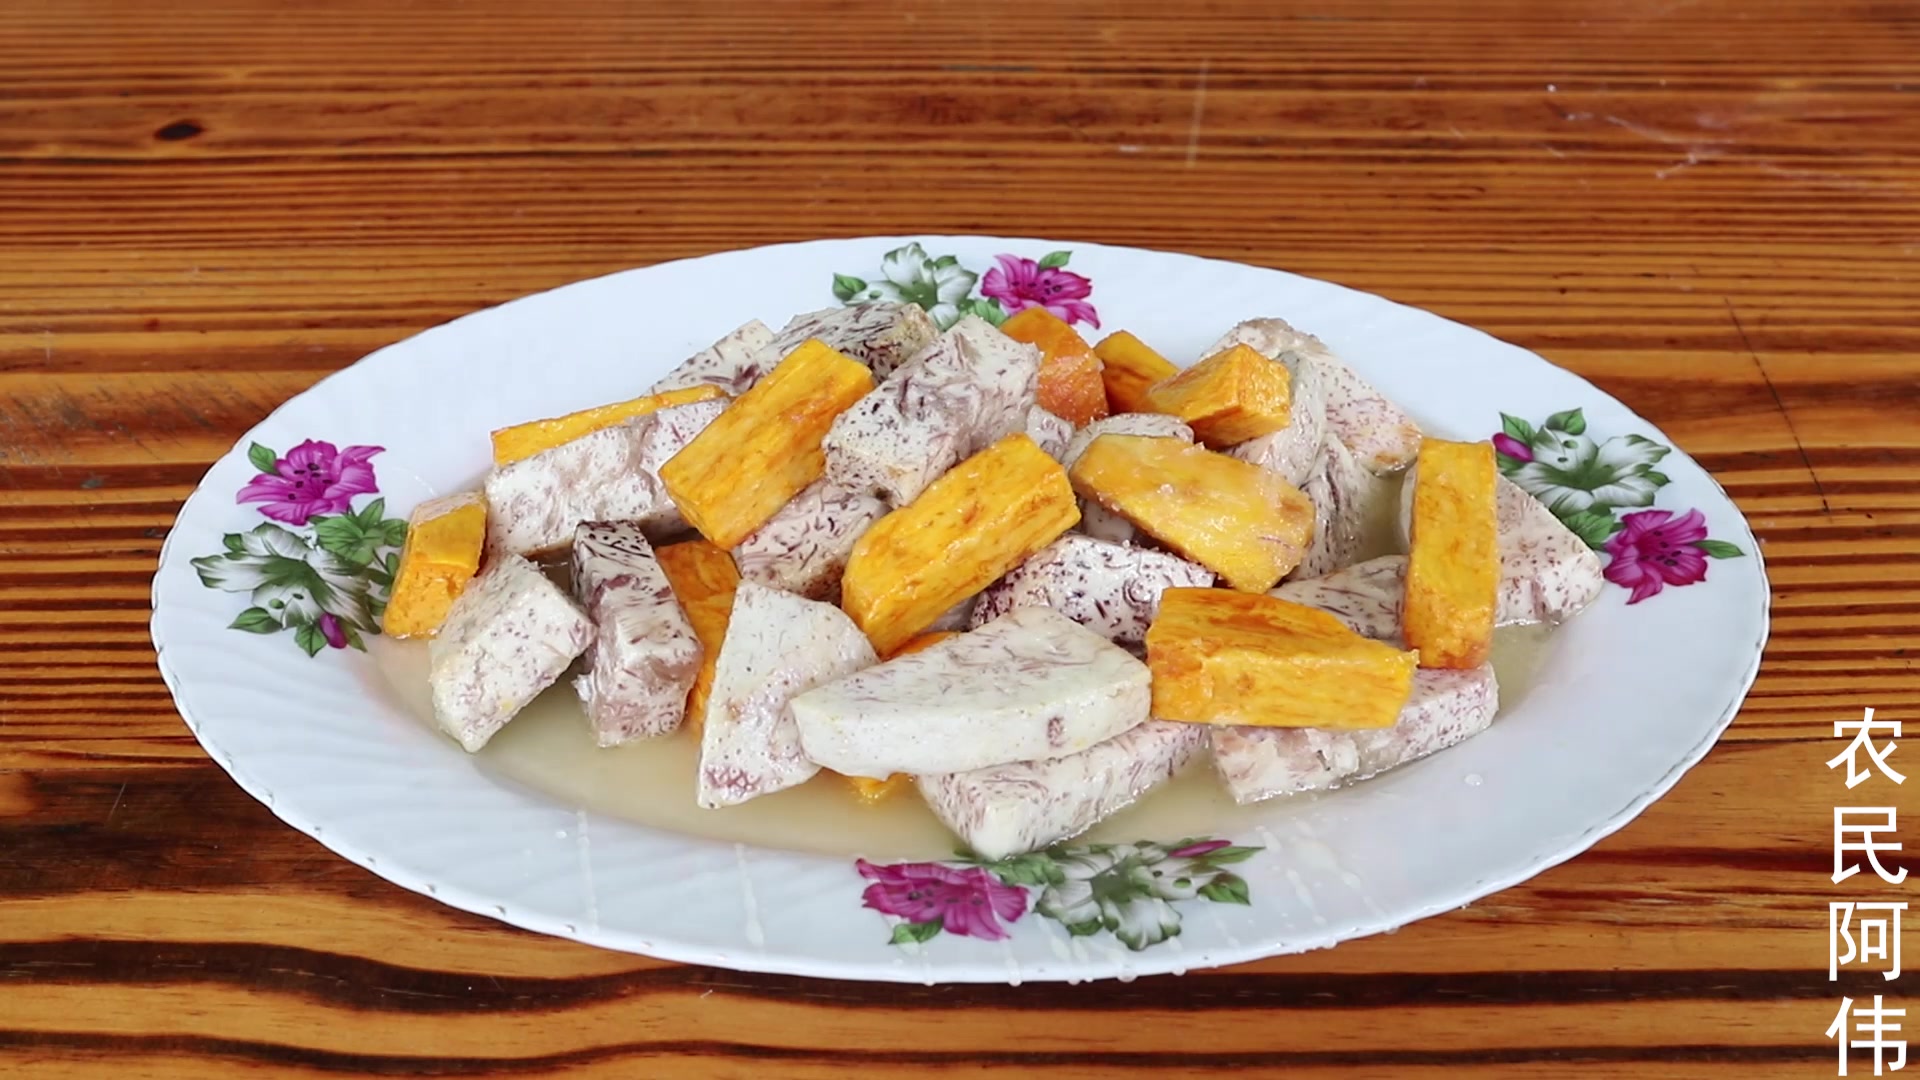 糕烧番薯芋头是潮汕的传统美食,宴席上也必不可少,一定要试试